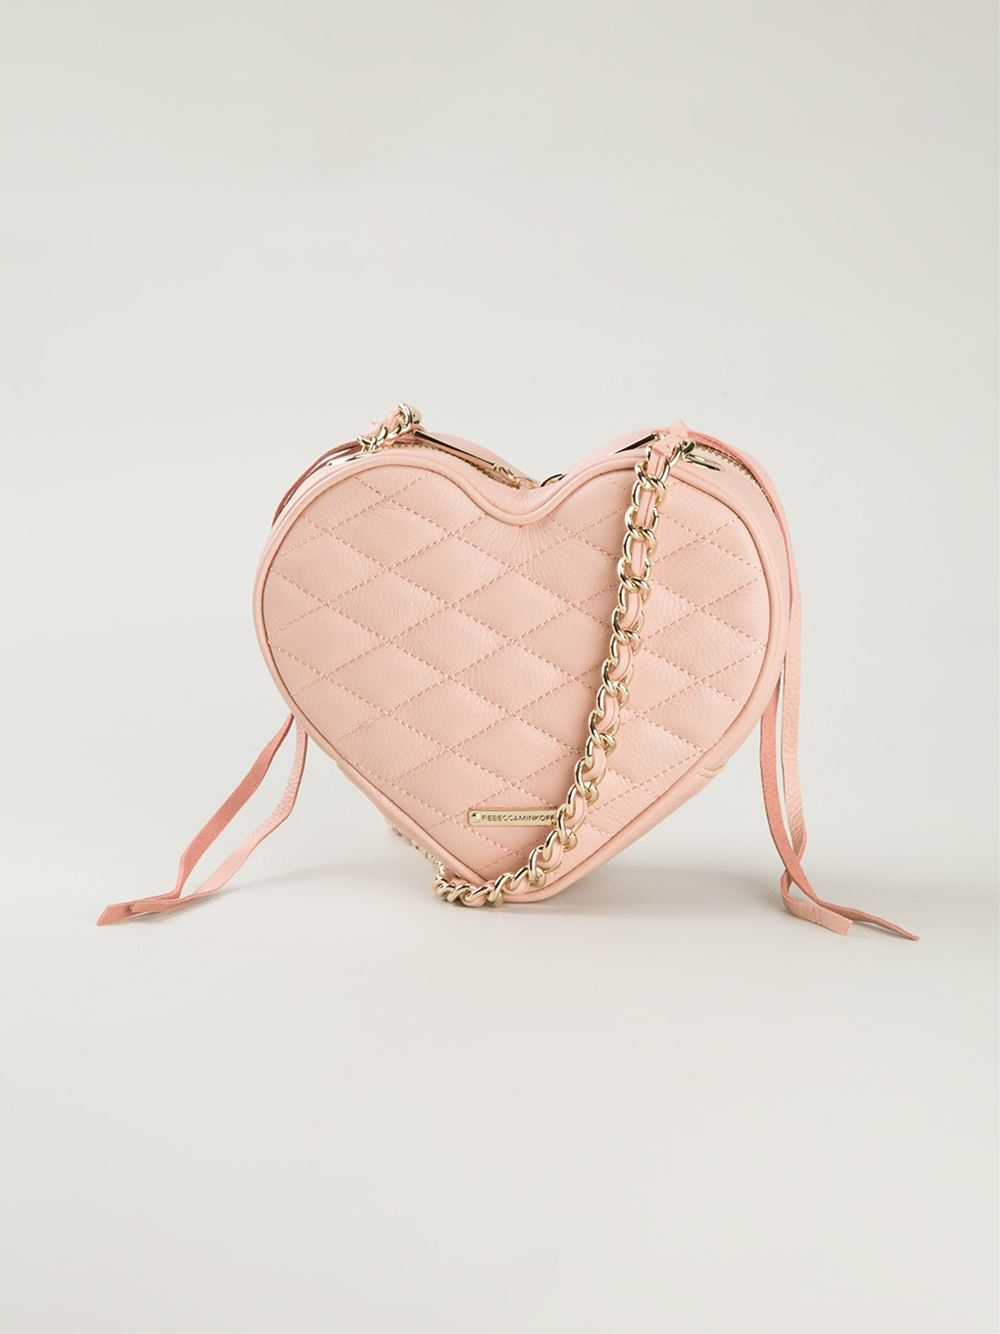 Lyst - Rebecca Minkoff Heart Cross Body Bag in Pink